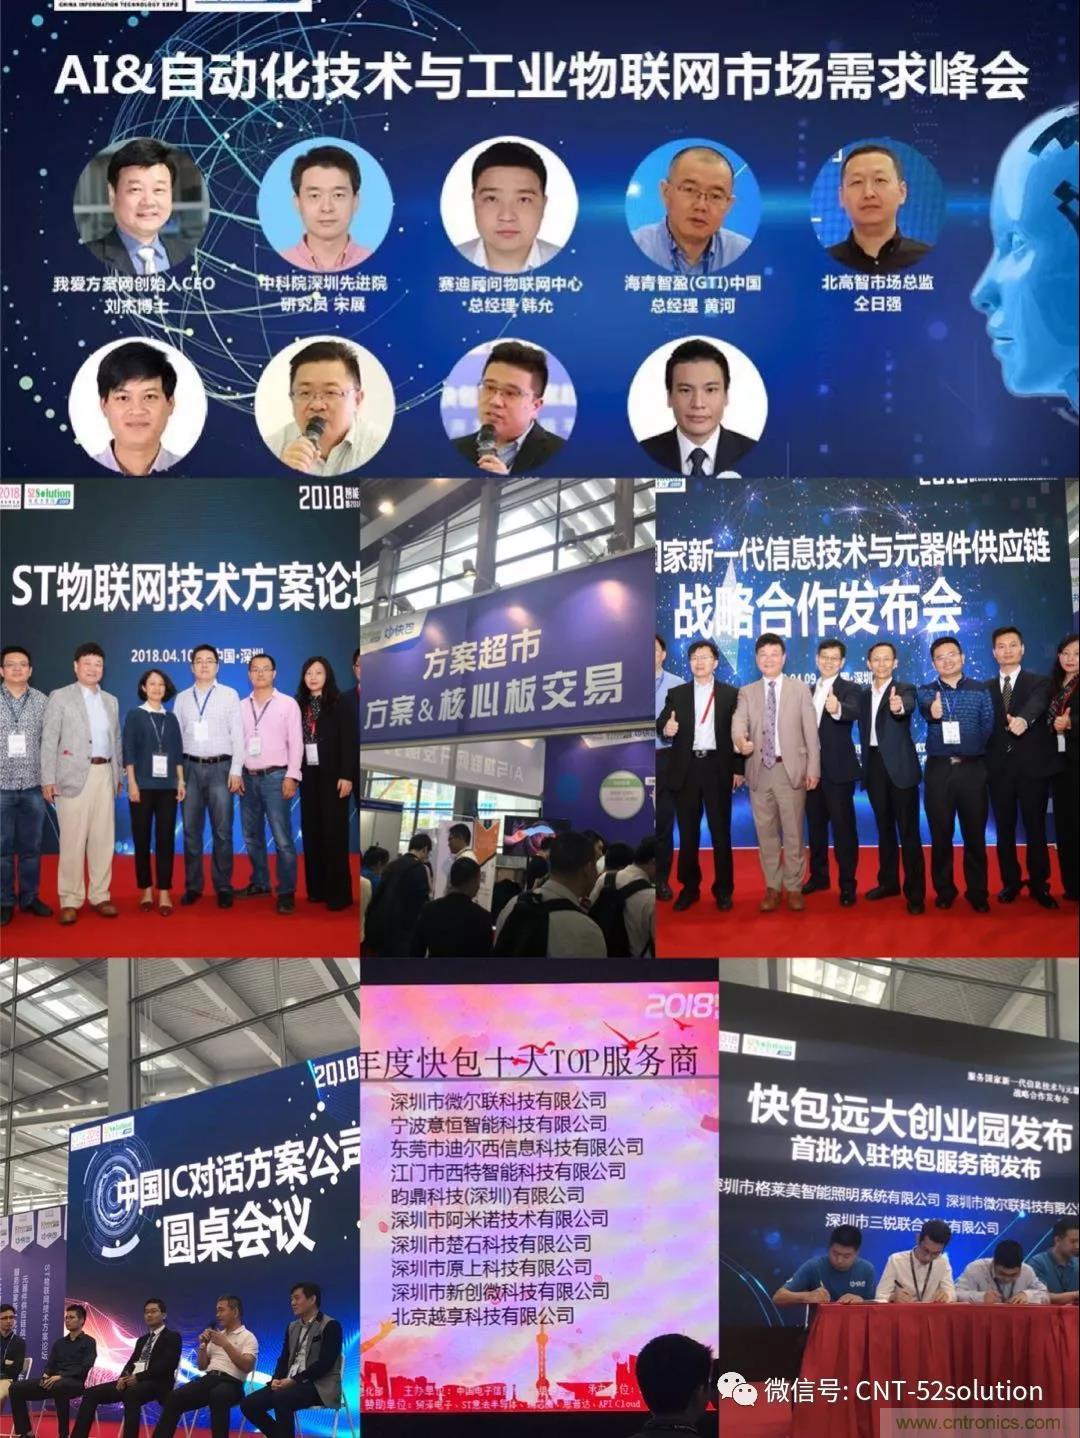 我爱方案网携带100个工业物联网方案参展中国电子展，助力中小企业创新！